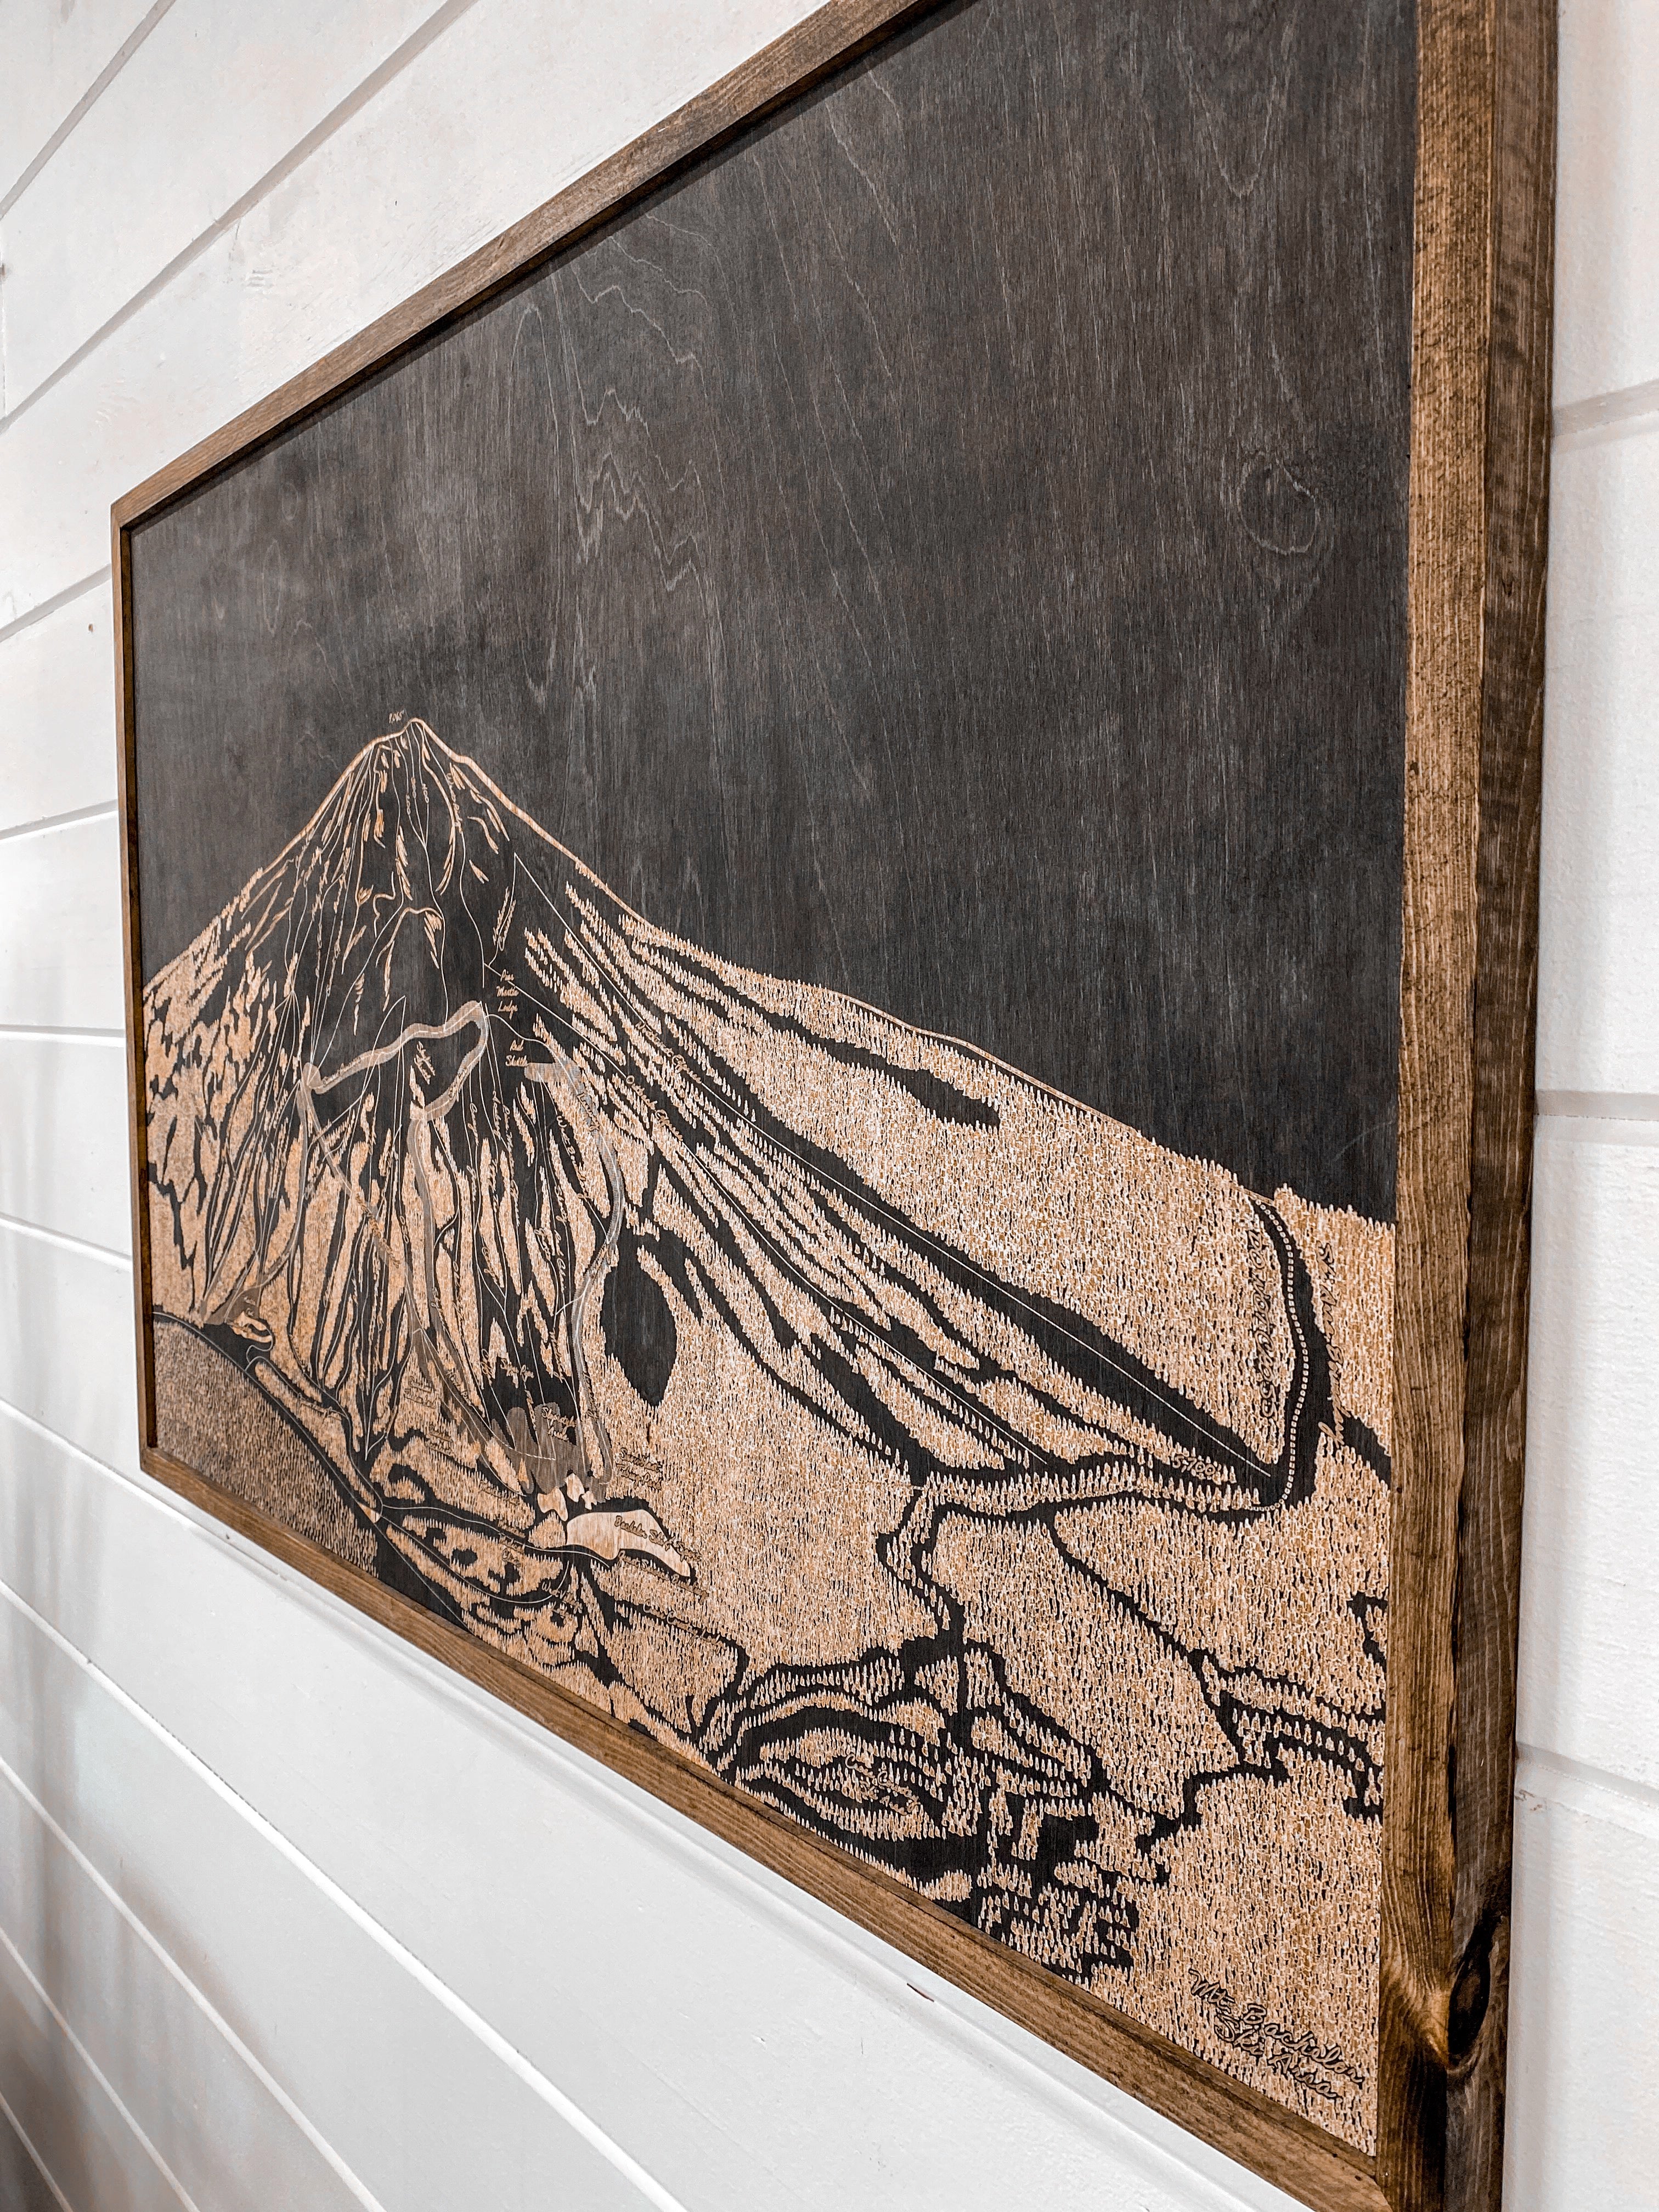 Mt Bachelor Ski Map Wood Artwork